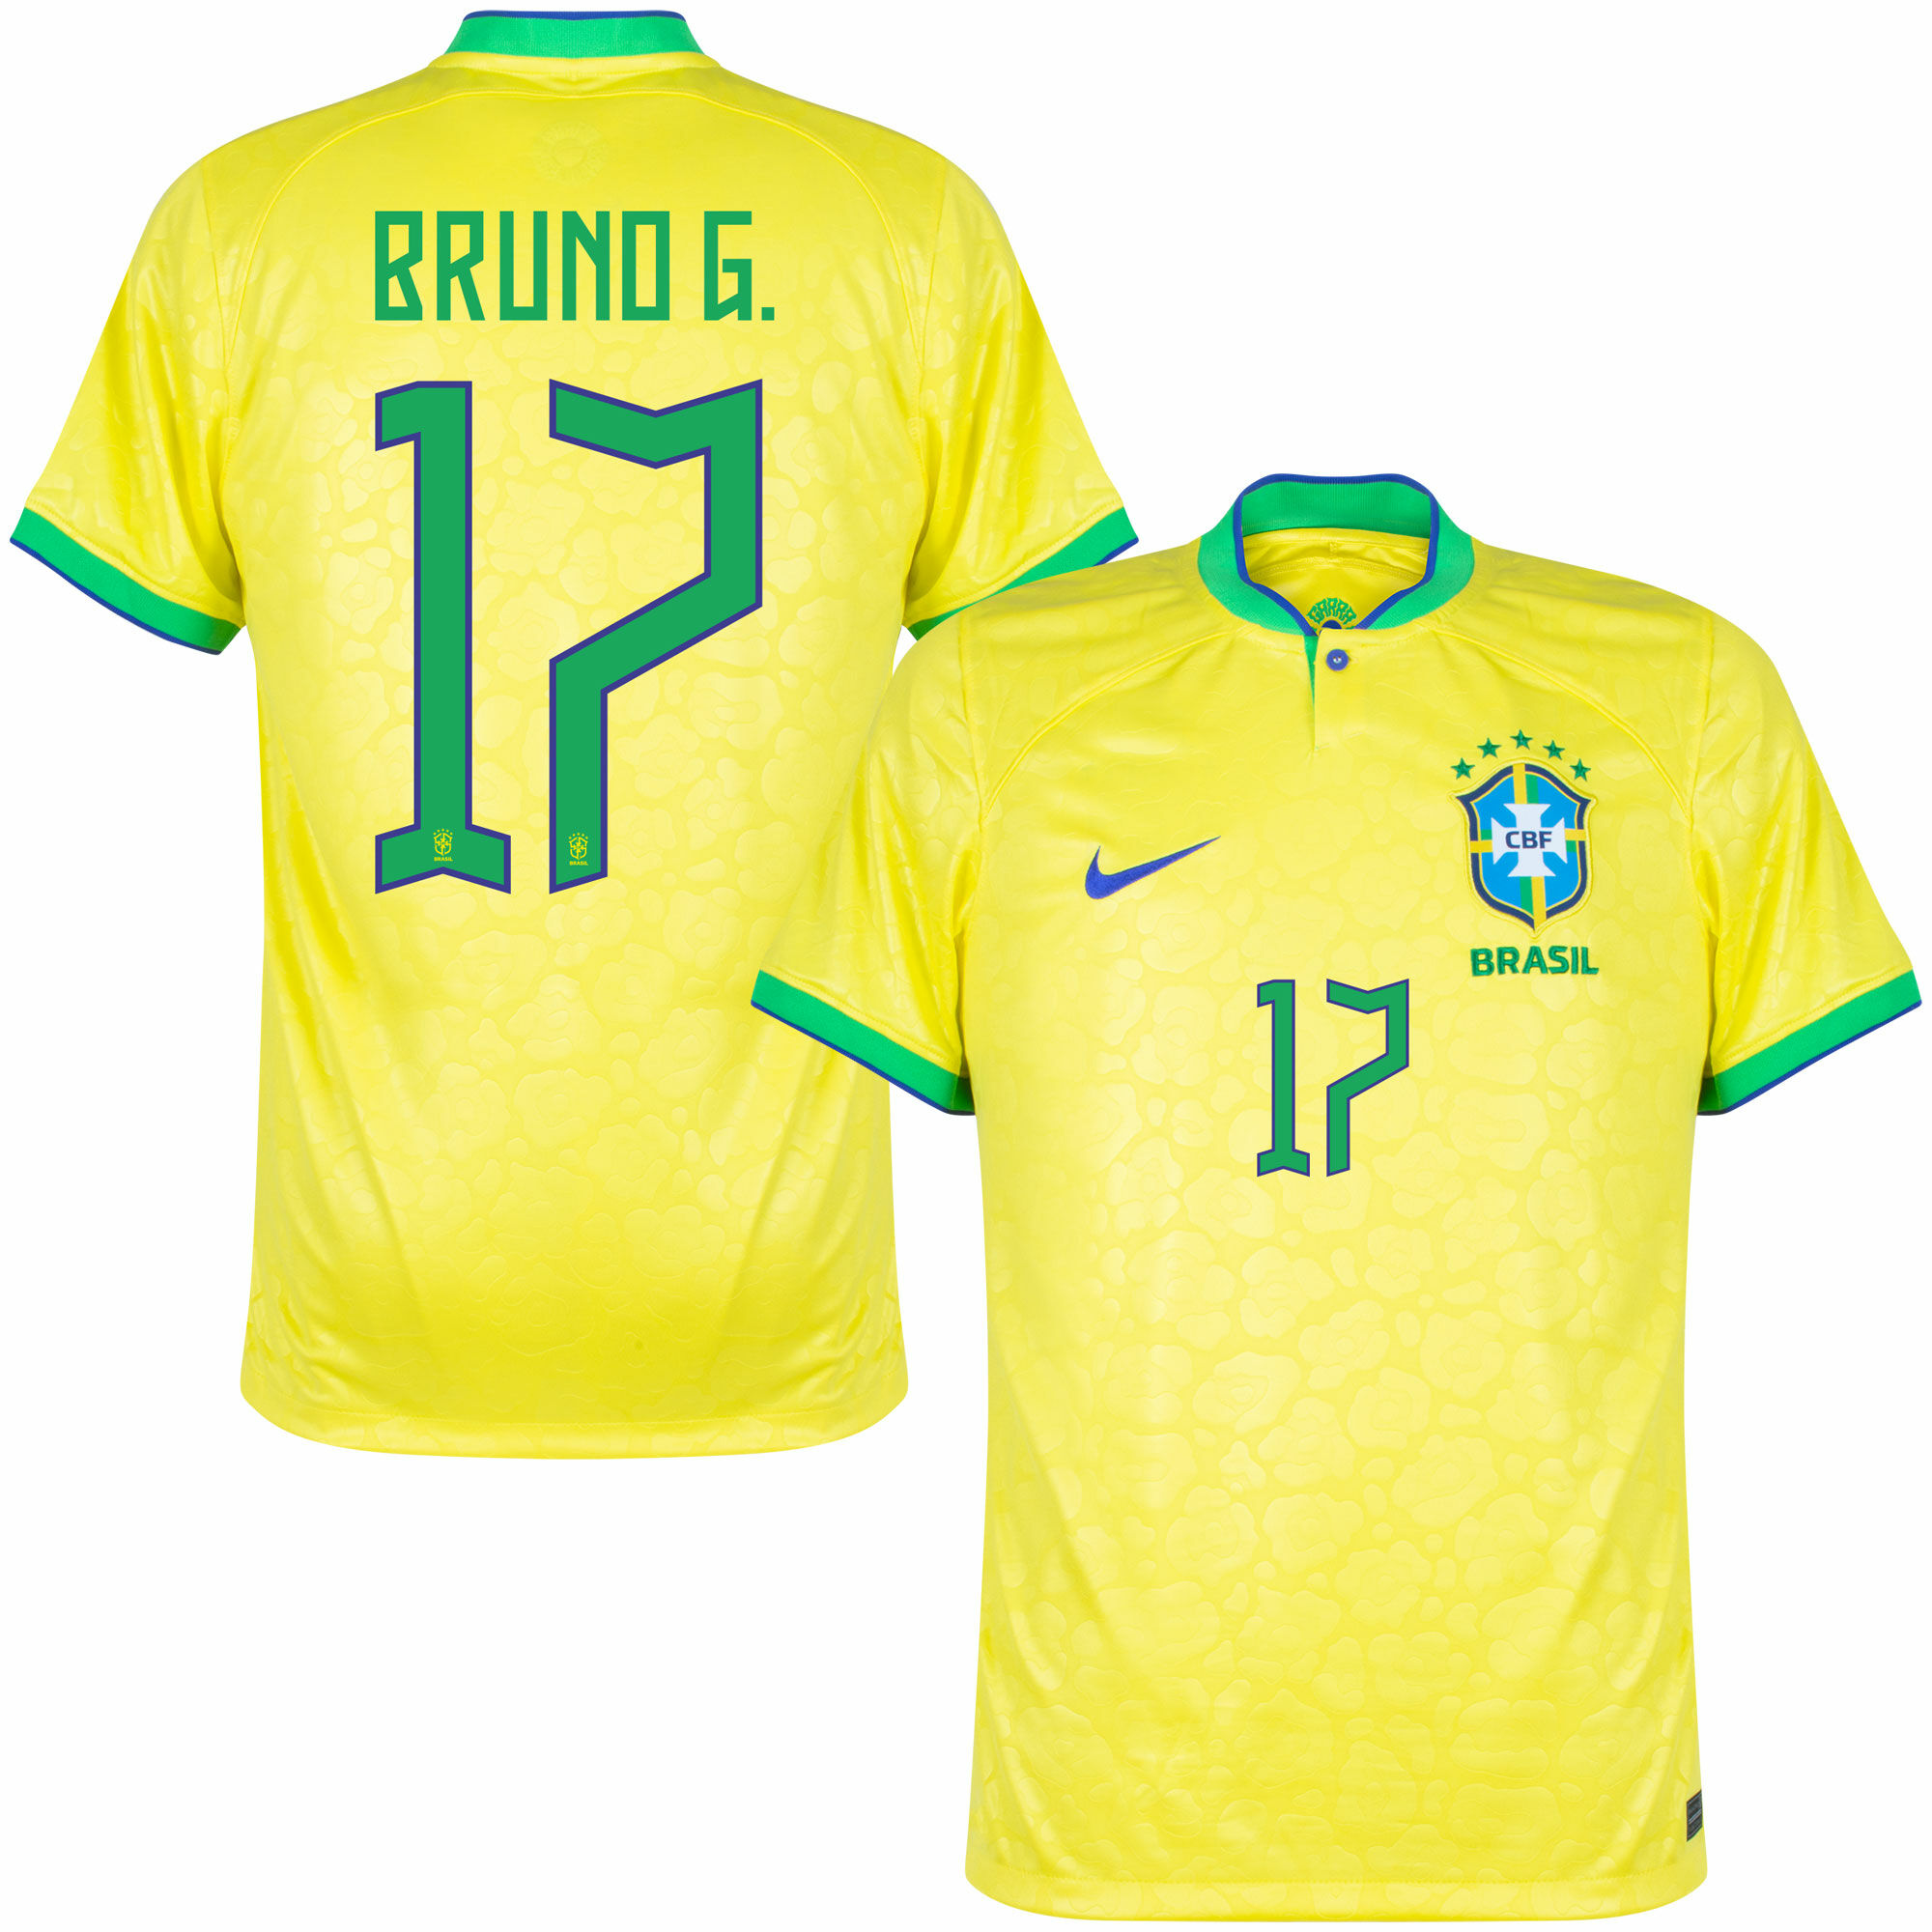 Brazílie - Dres fotbalový - Bruno Guimarães, číslo 17, oficiální potisk, žlutý, domácí, sezóna 2022/23